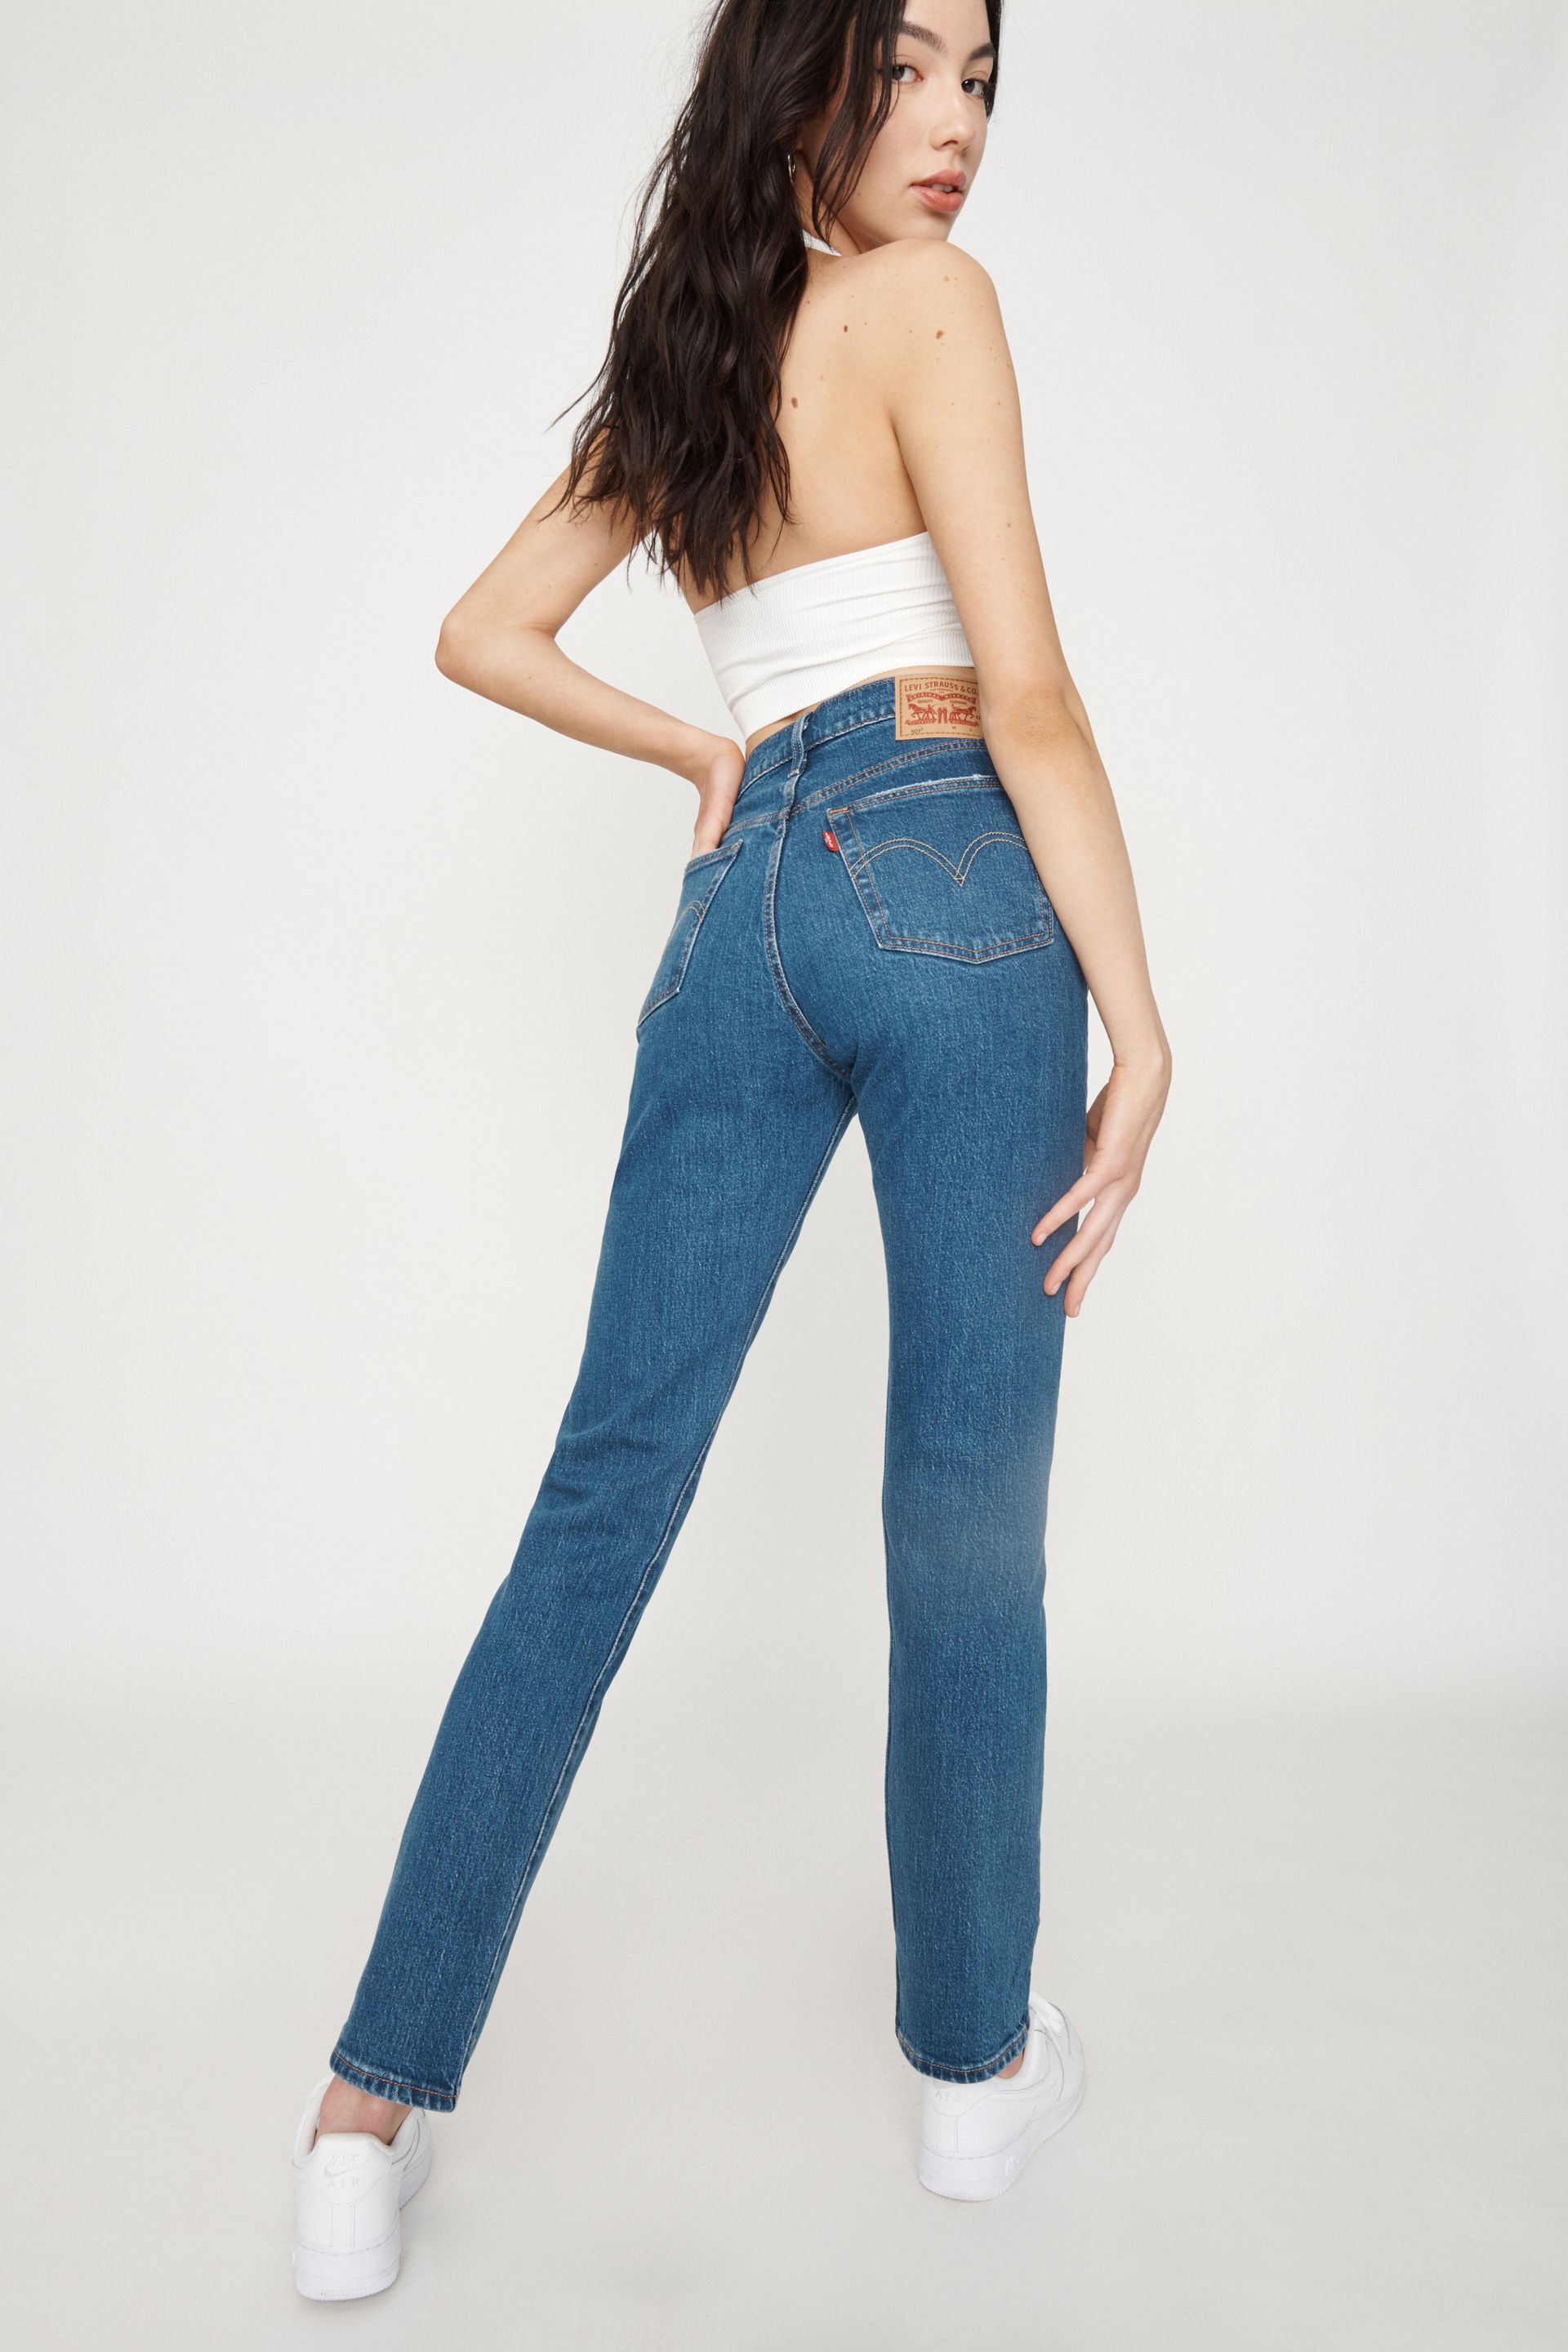 LEVIS 501® Original Women's Jeans